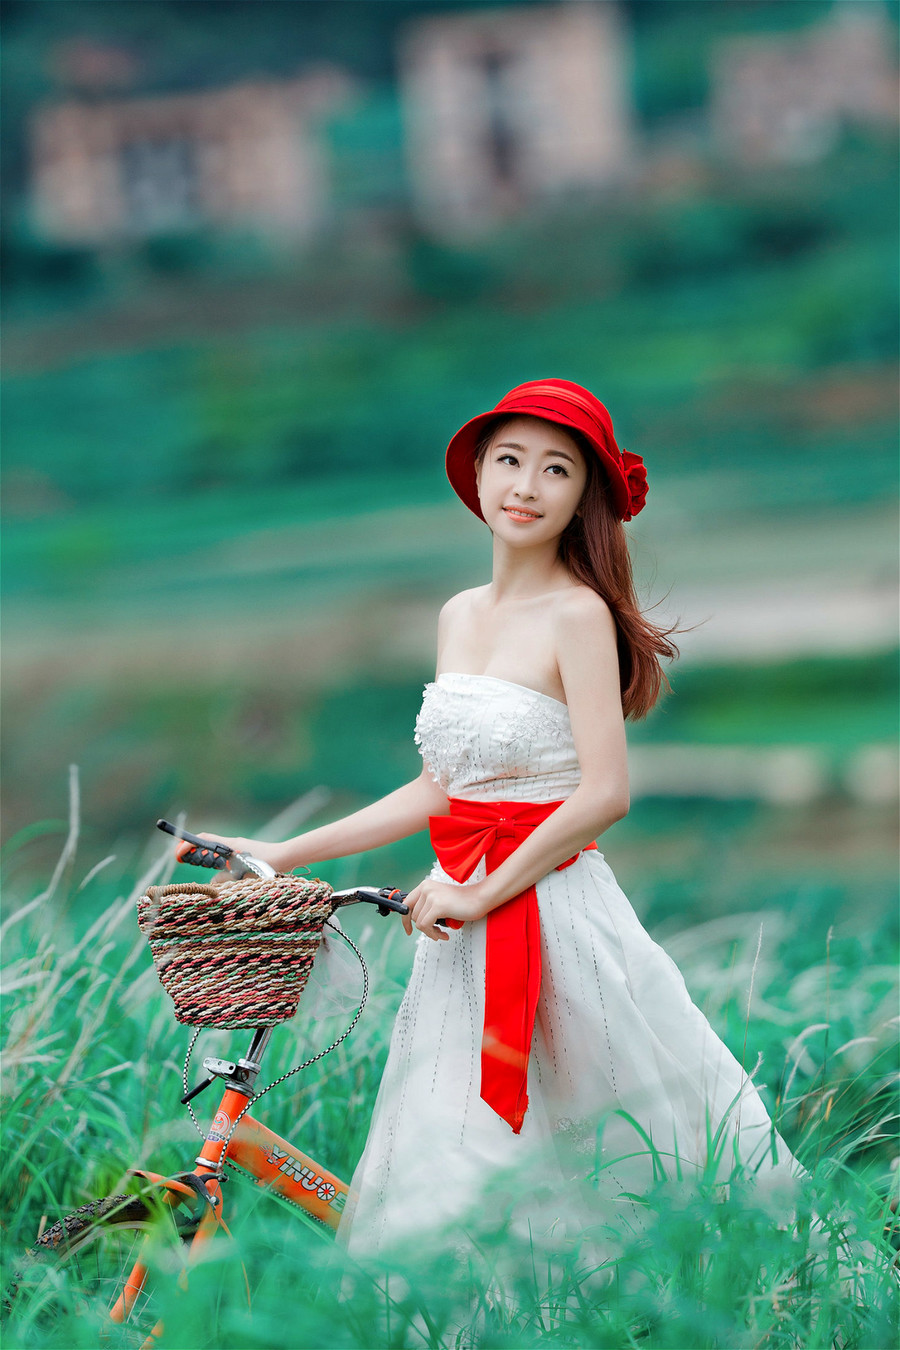 漂亮小红帽户外气质甜美小美女高清写真图片合集(二)